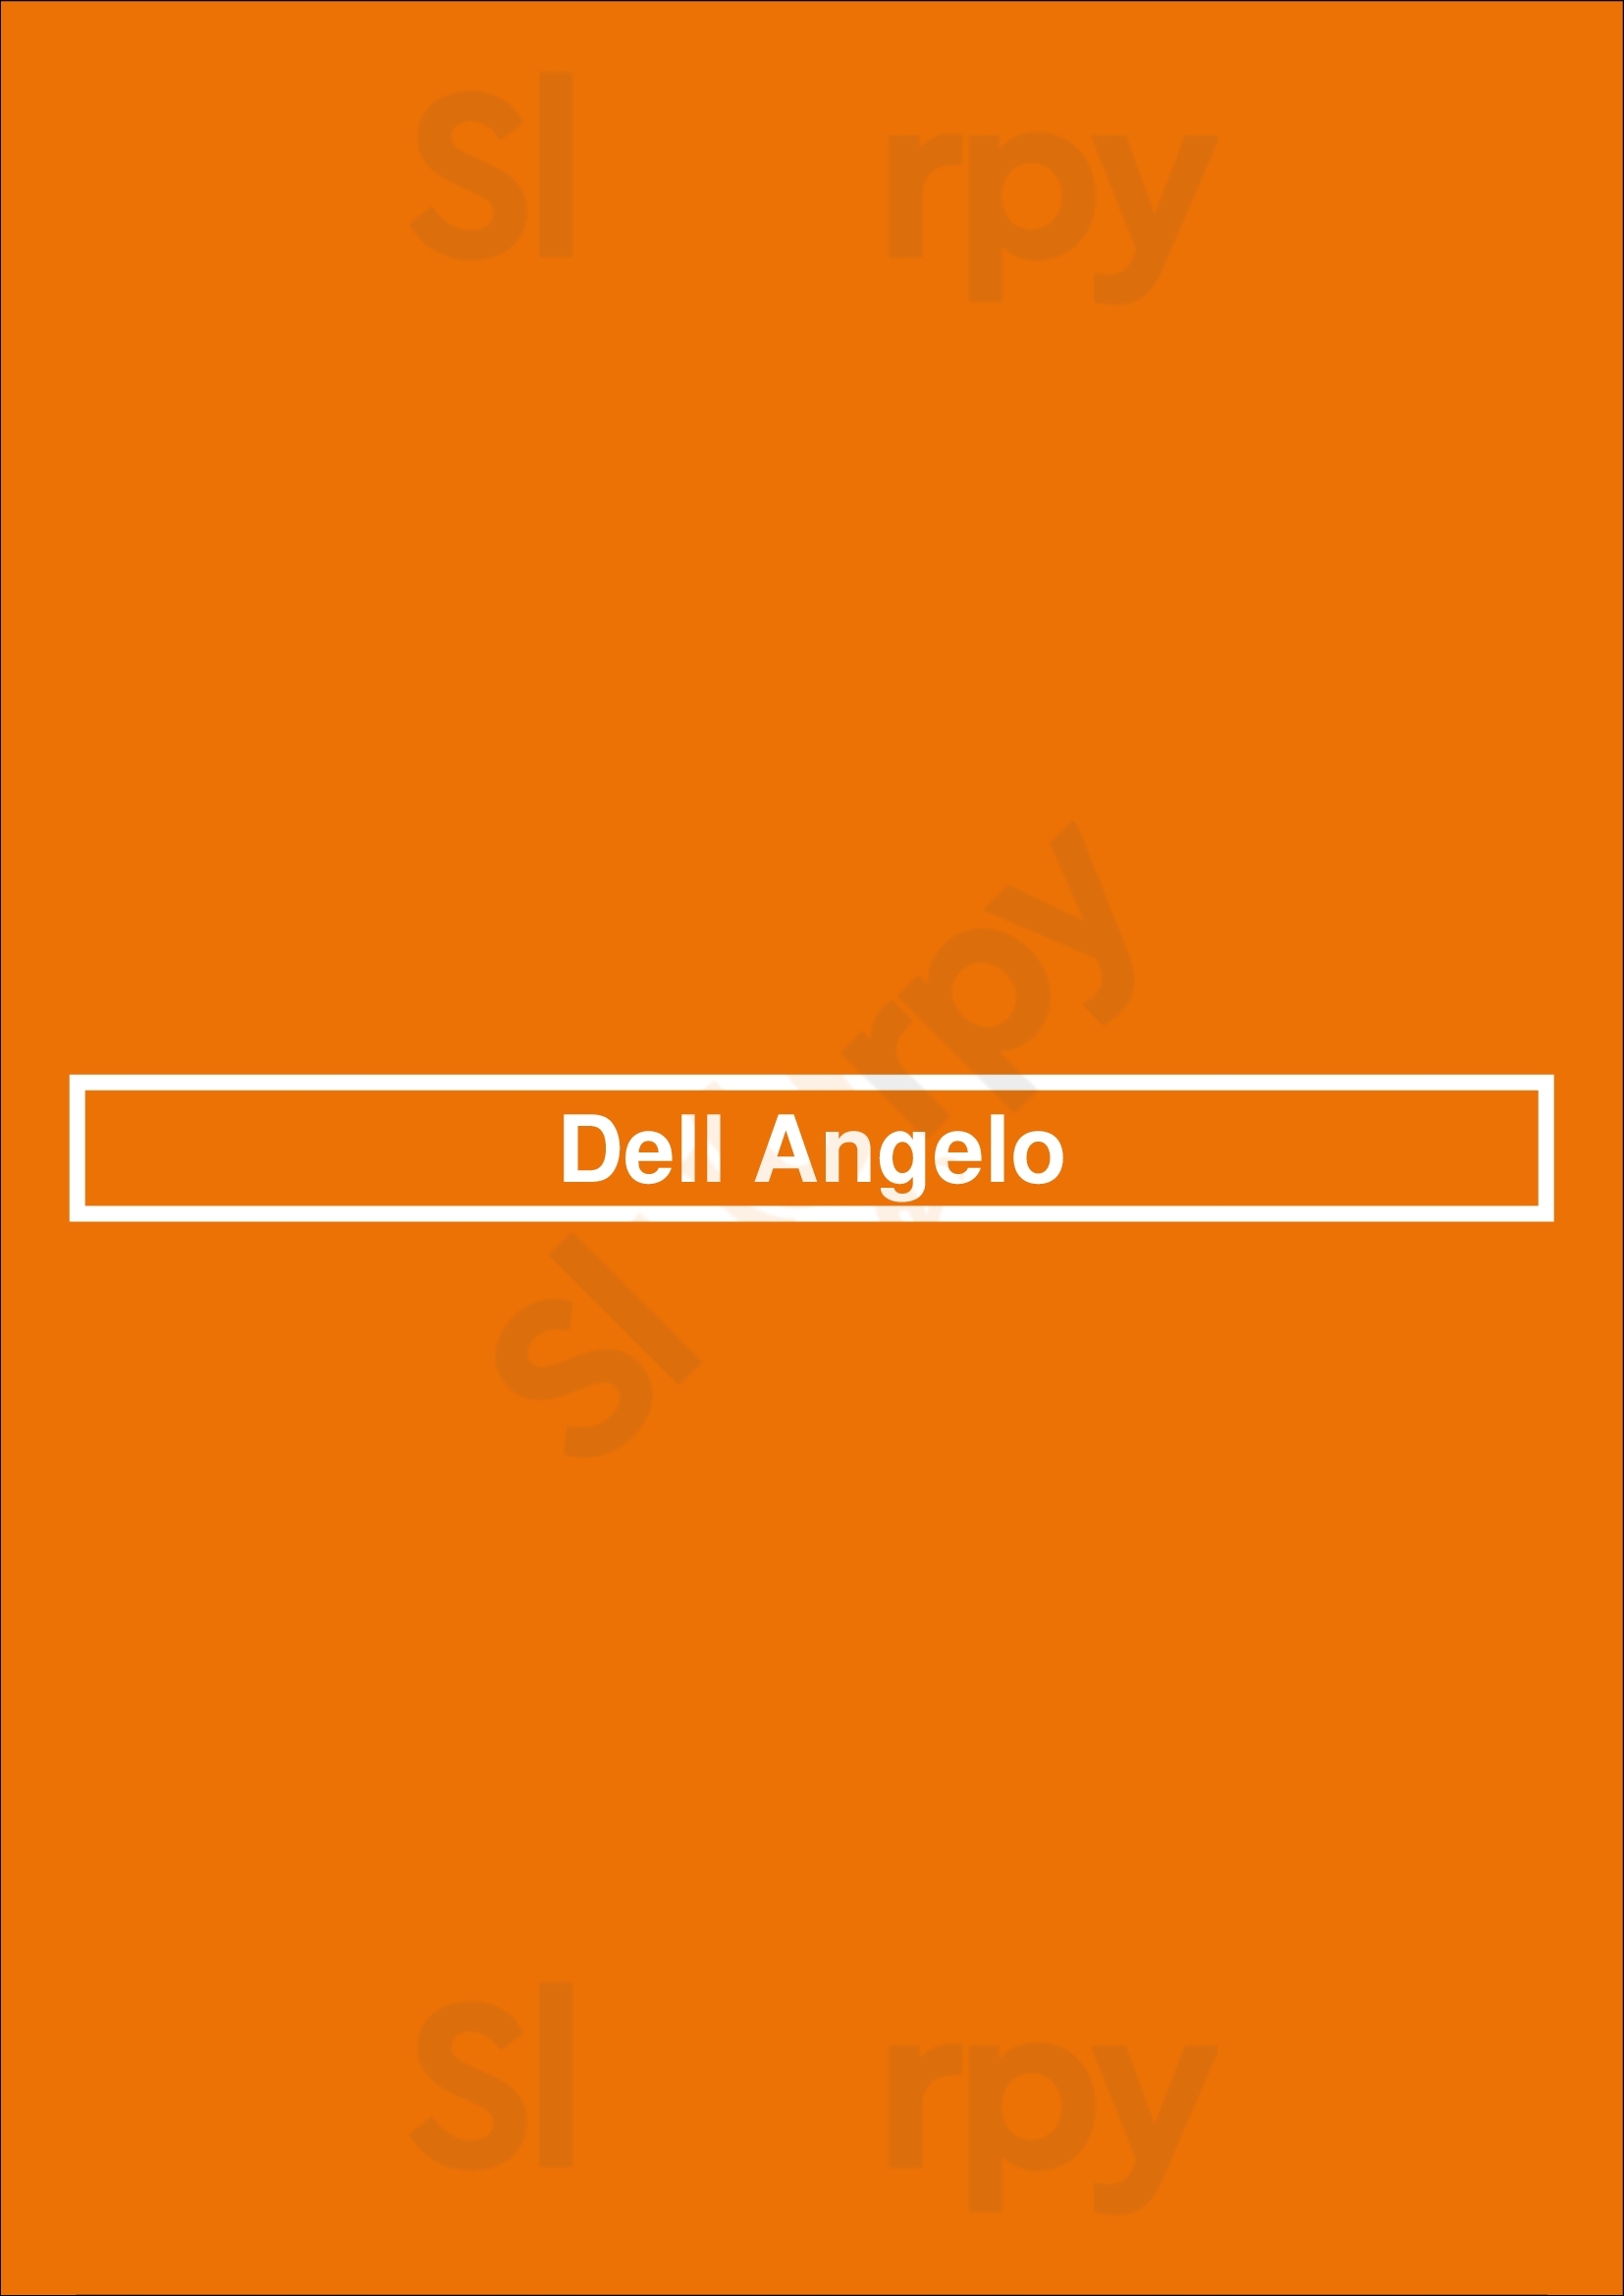 Dell Angelo Den Bosch Menu - 1